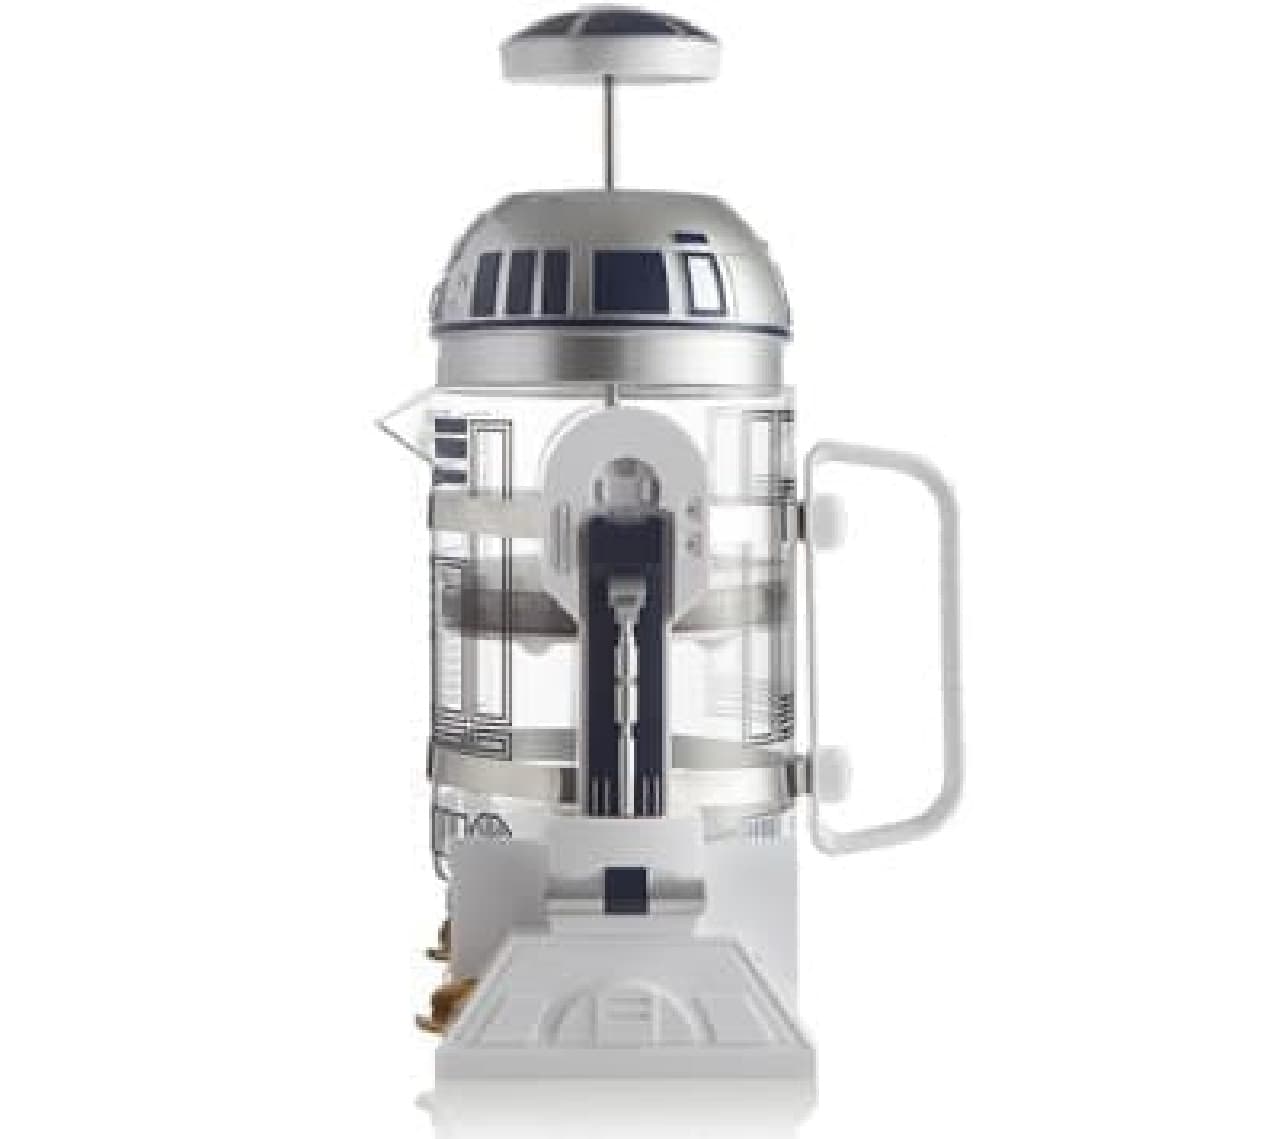 R2-D2 serves coffee and tea ... "Star Wars R2-D2 Coffee Press"